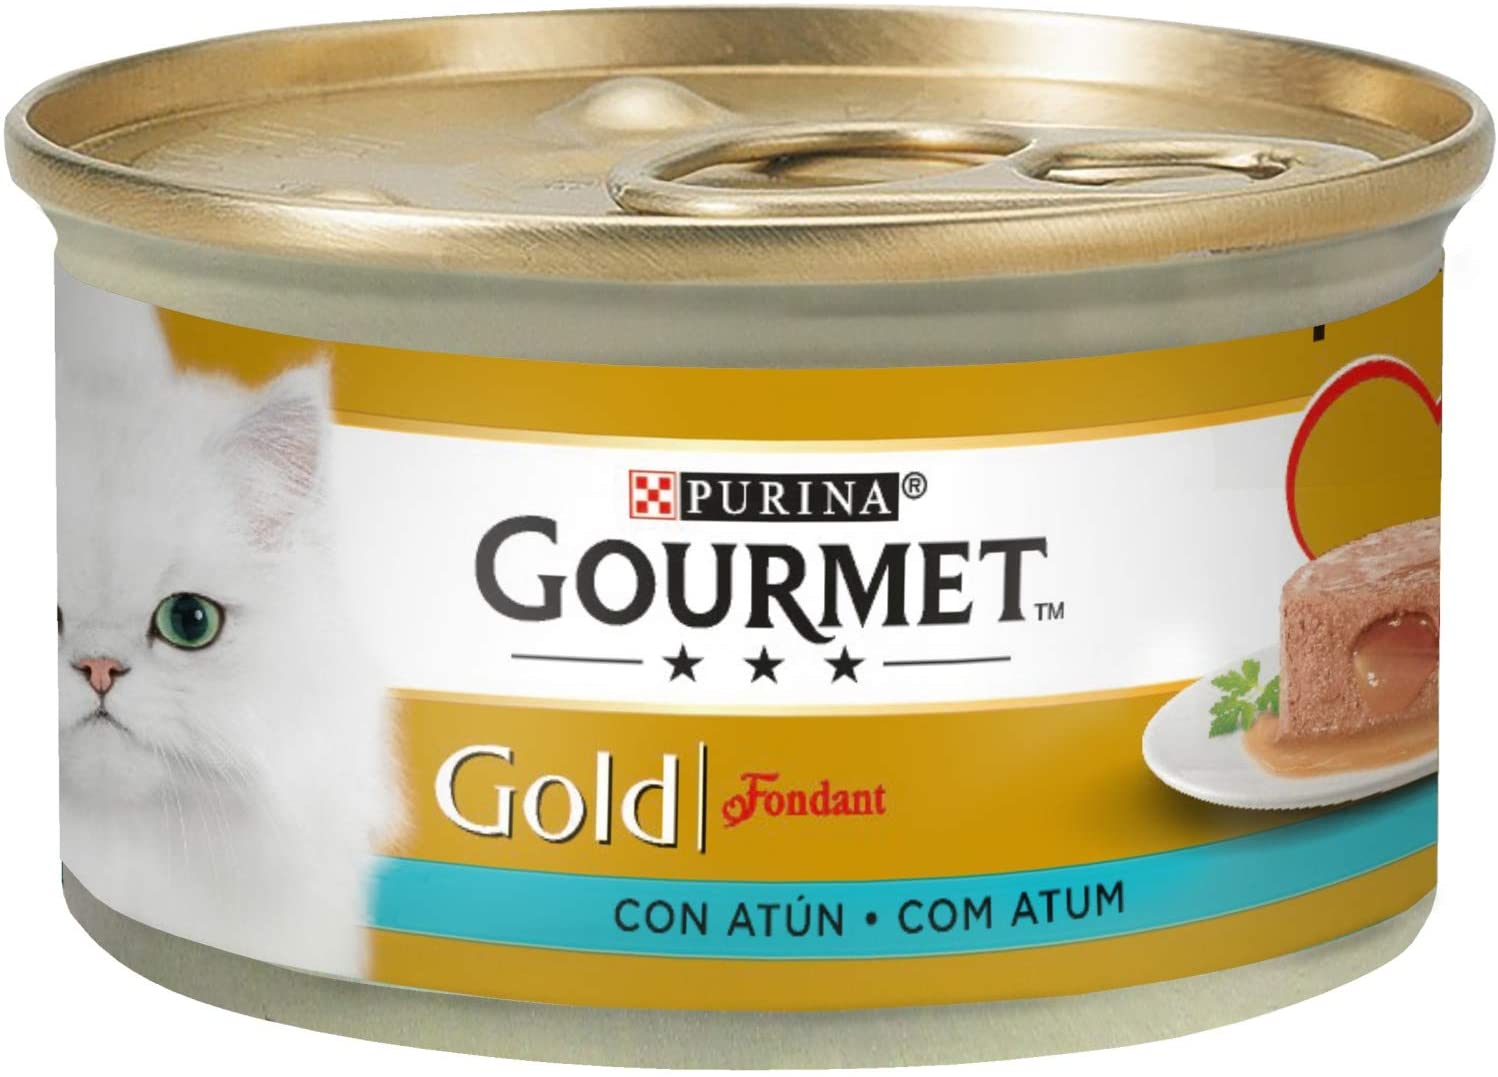  Purina Gourmet Gold Fondant comida para gatos con Atun 24 x 85 g 